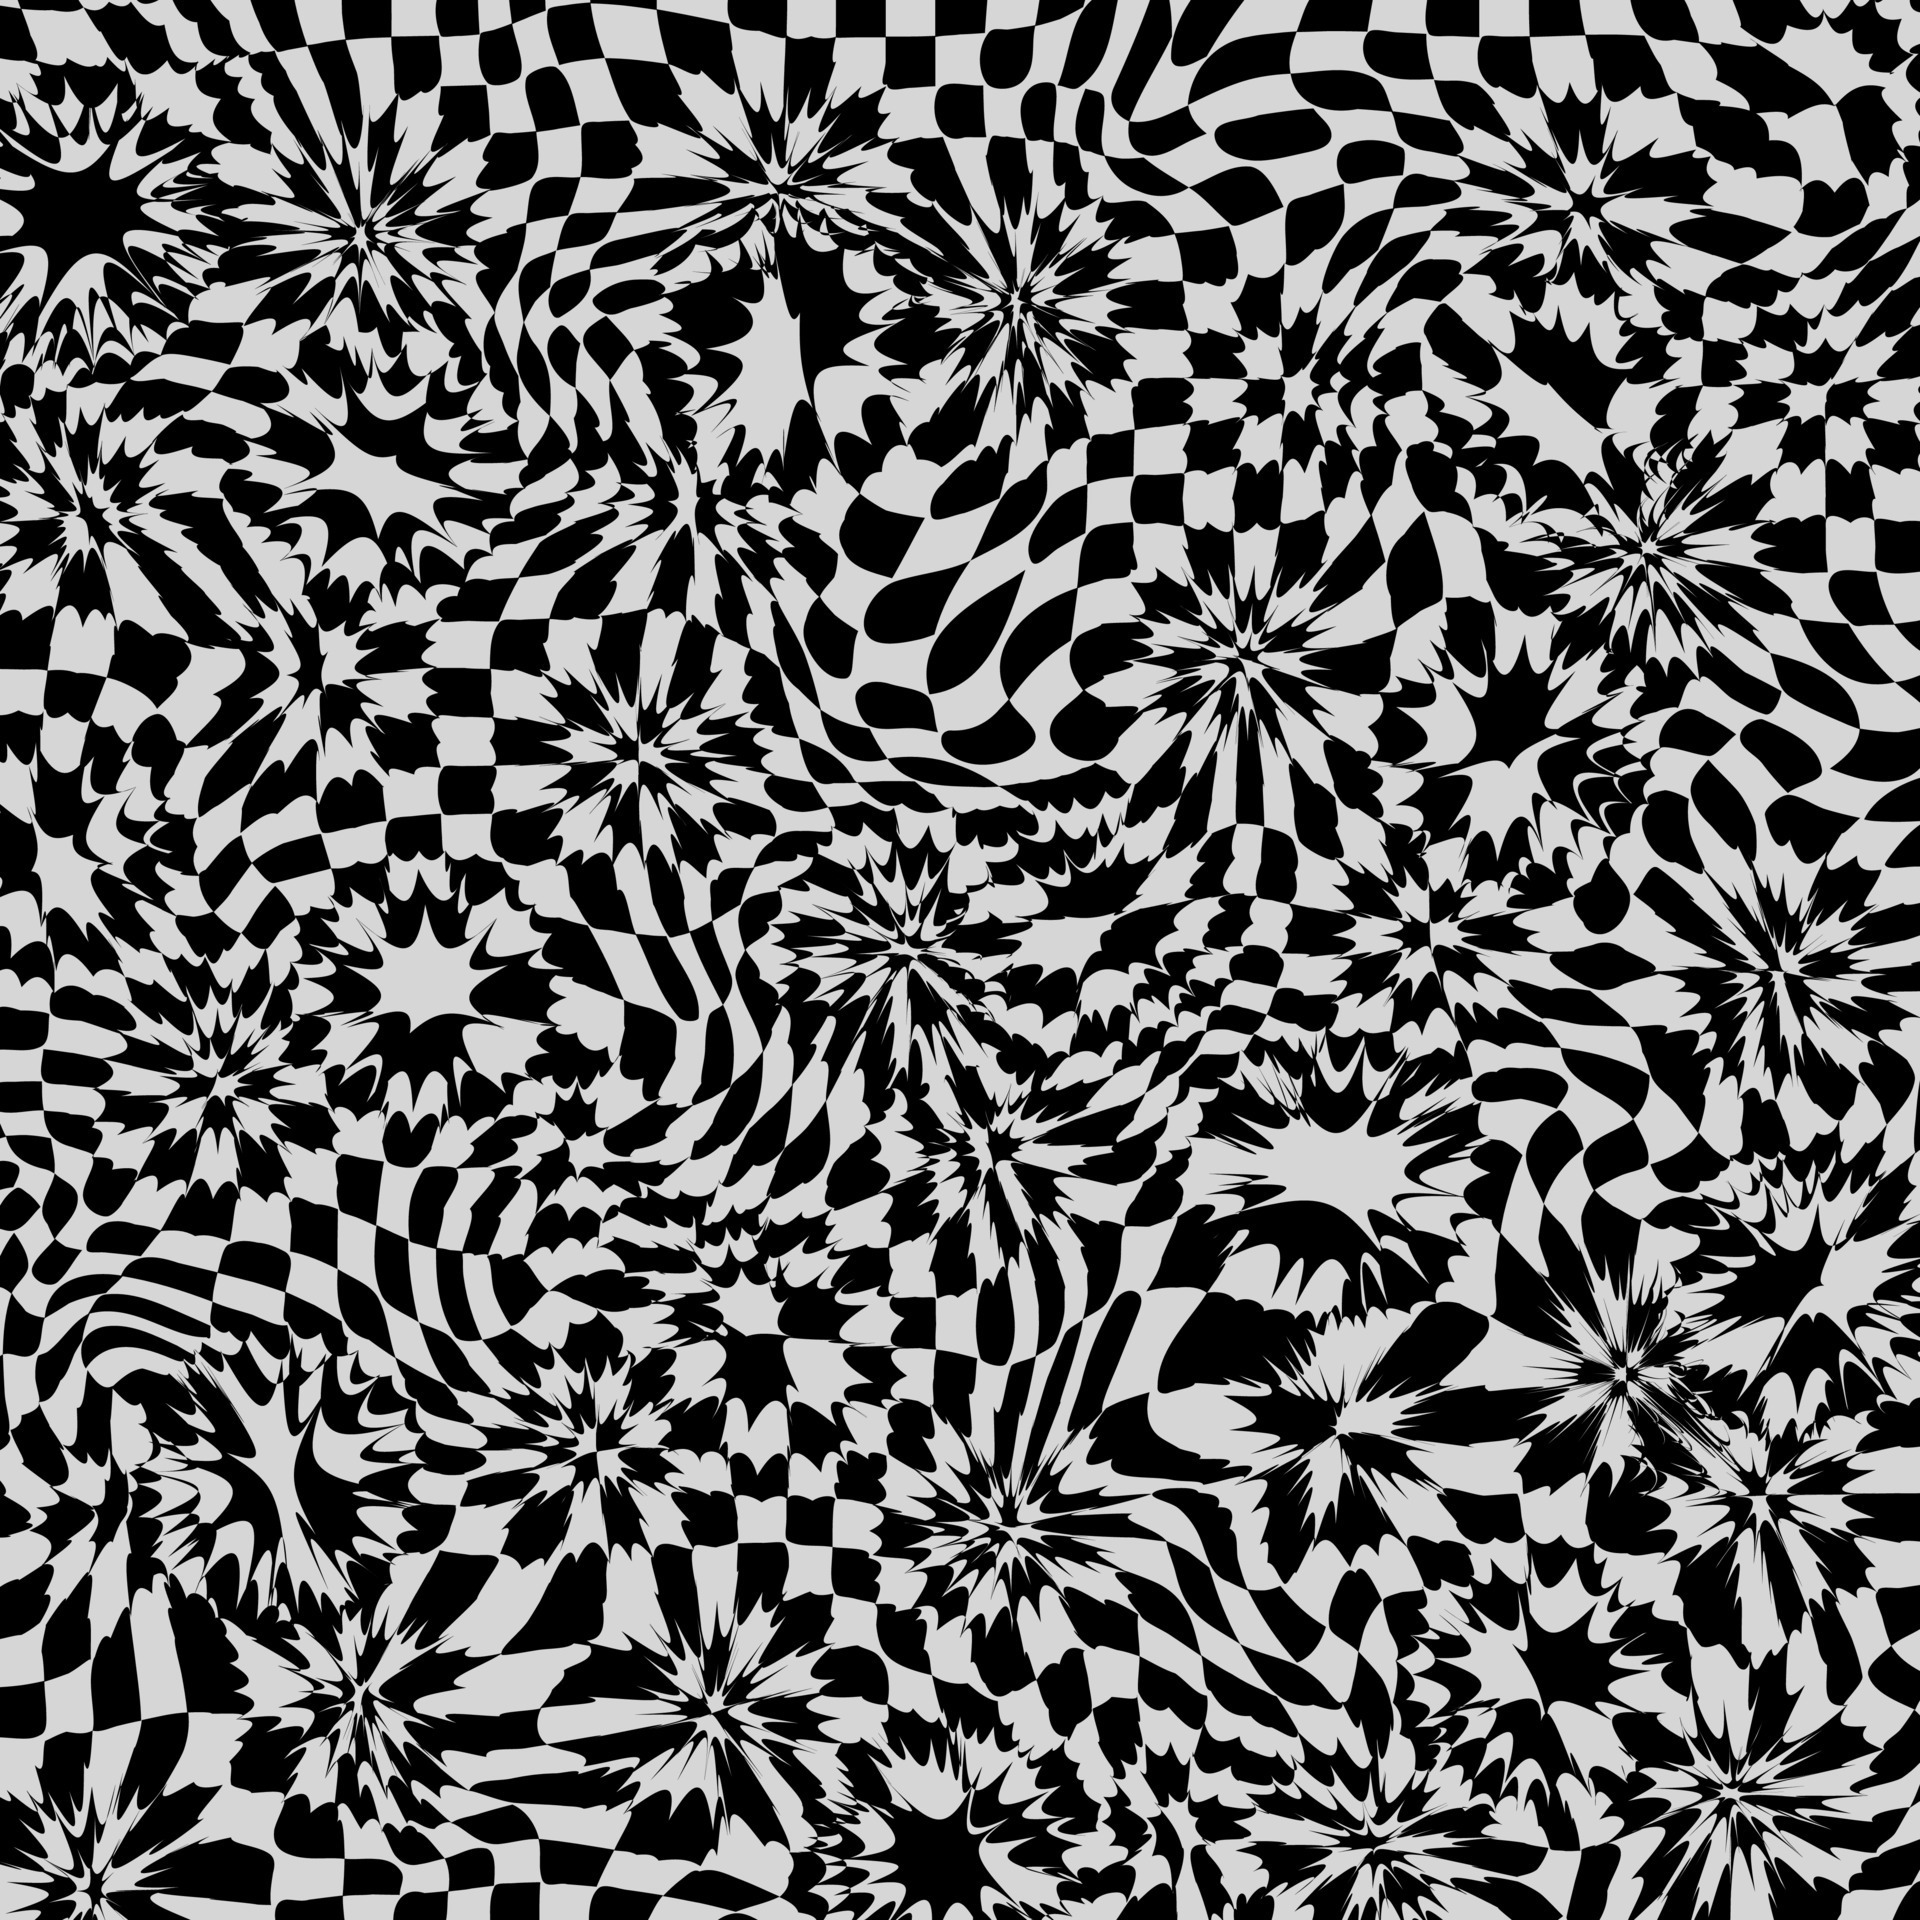 Padrão de xadrez fundo de textura quadrada preto e branco em vetor plano